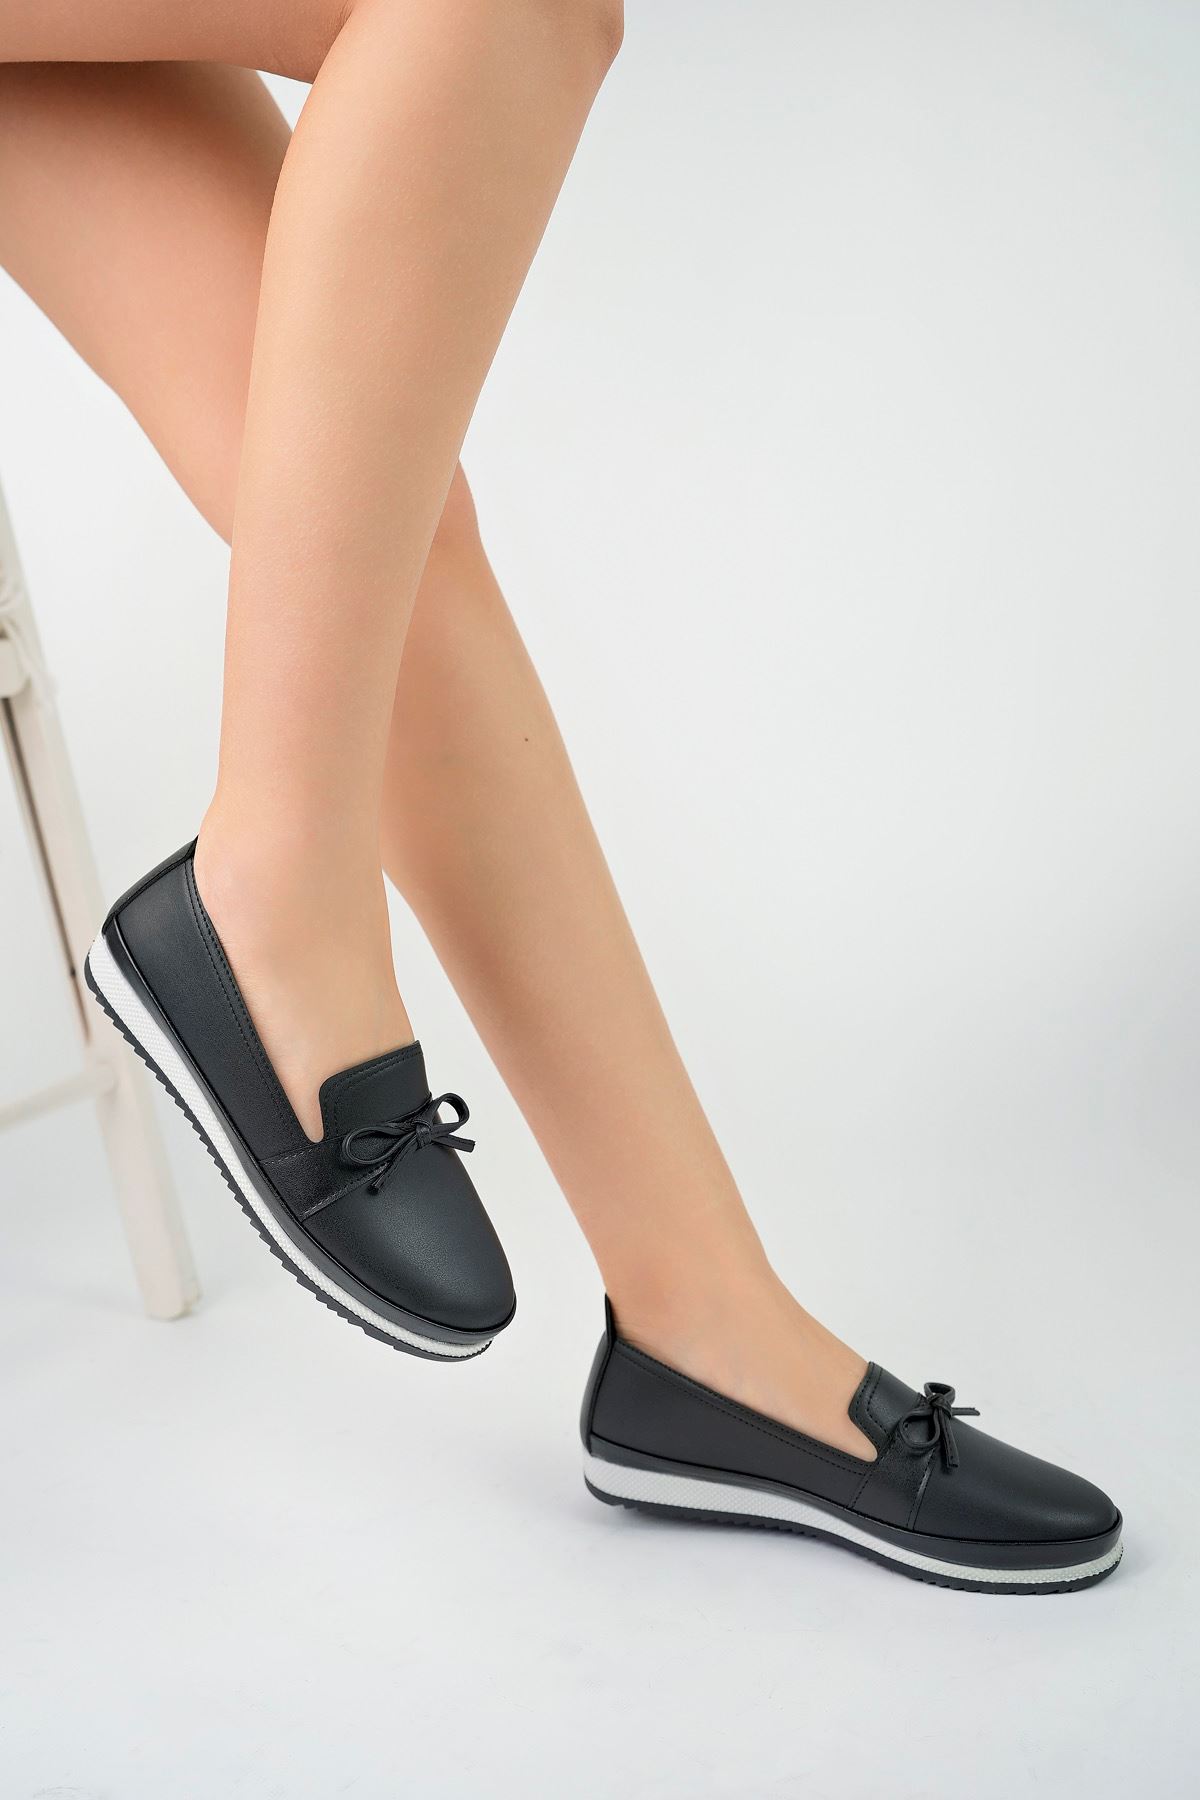 Ortapedik Pedli Siyah Kadın Ayakkabı